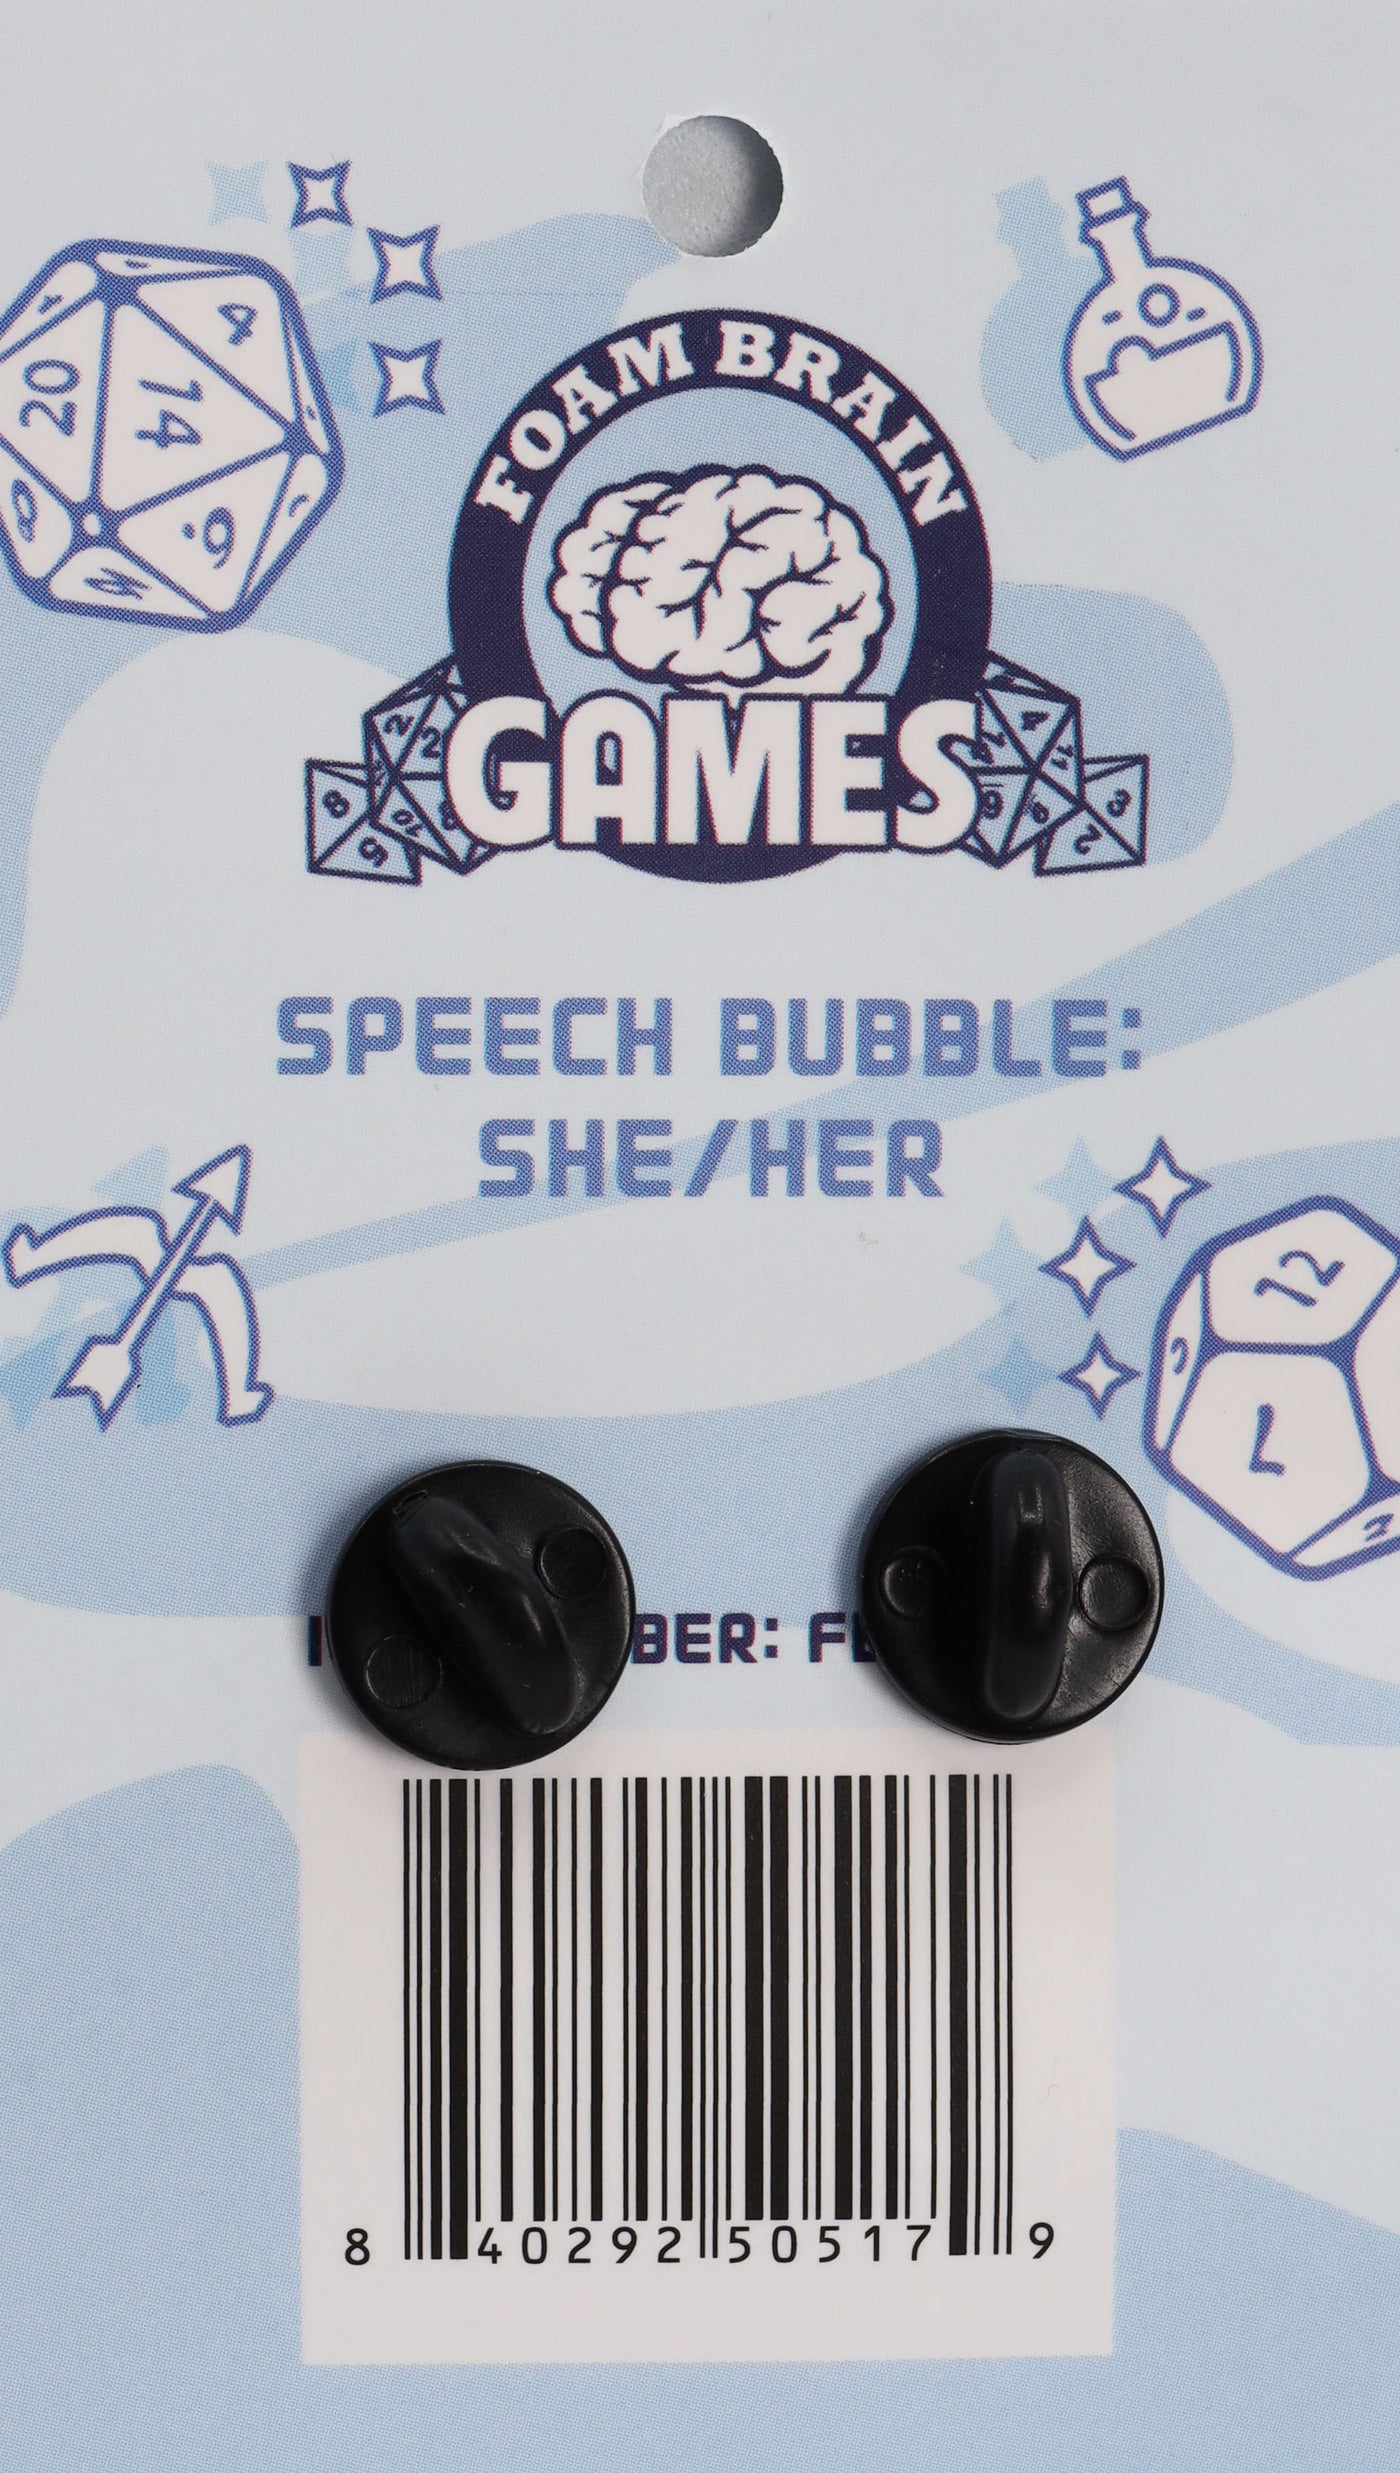 Speech Bubble Pin: She/Her Pronouns  cardboard clothing